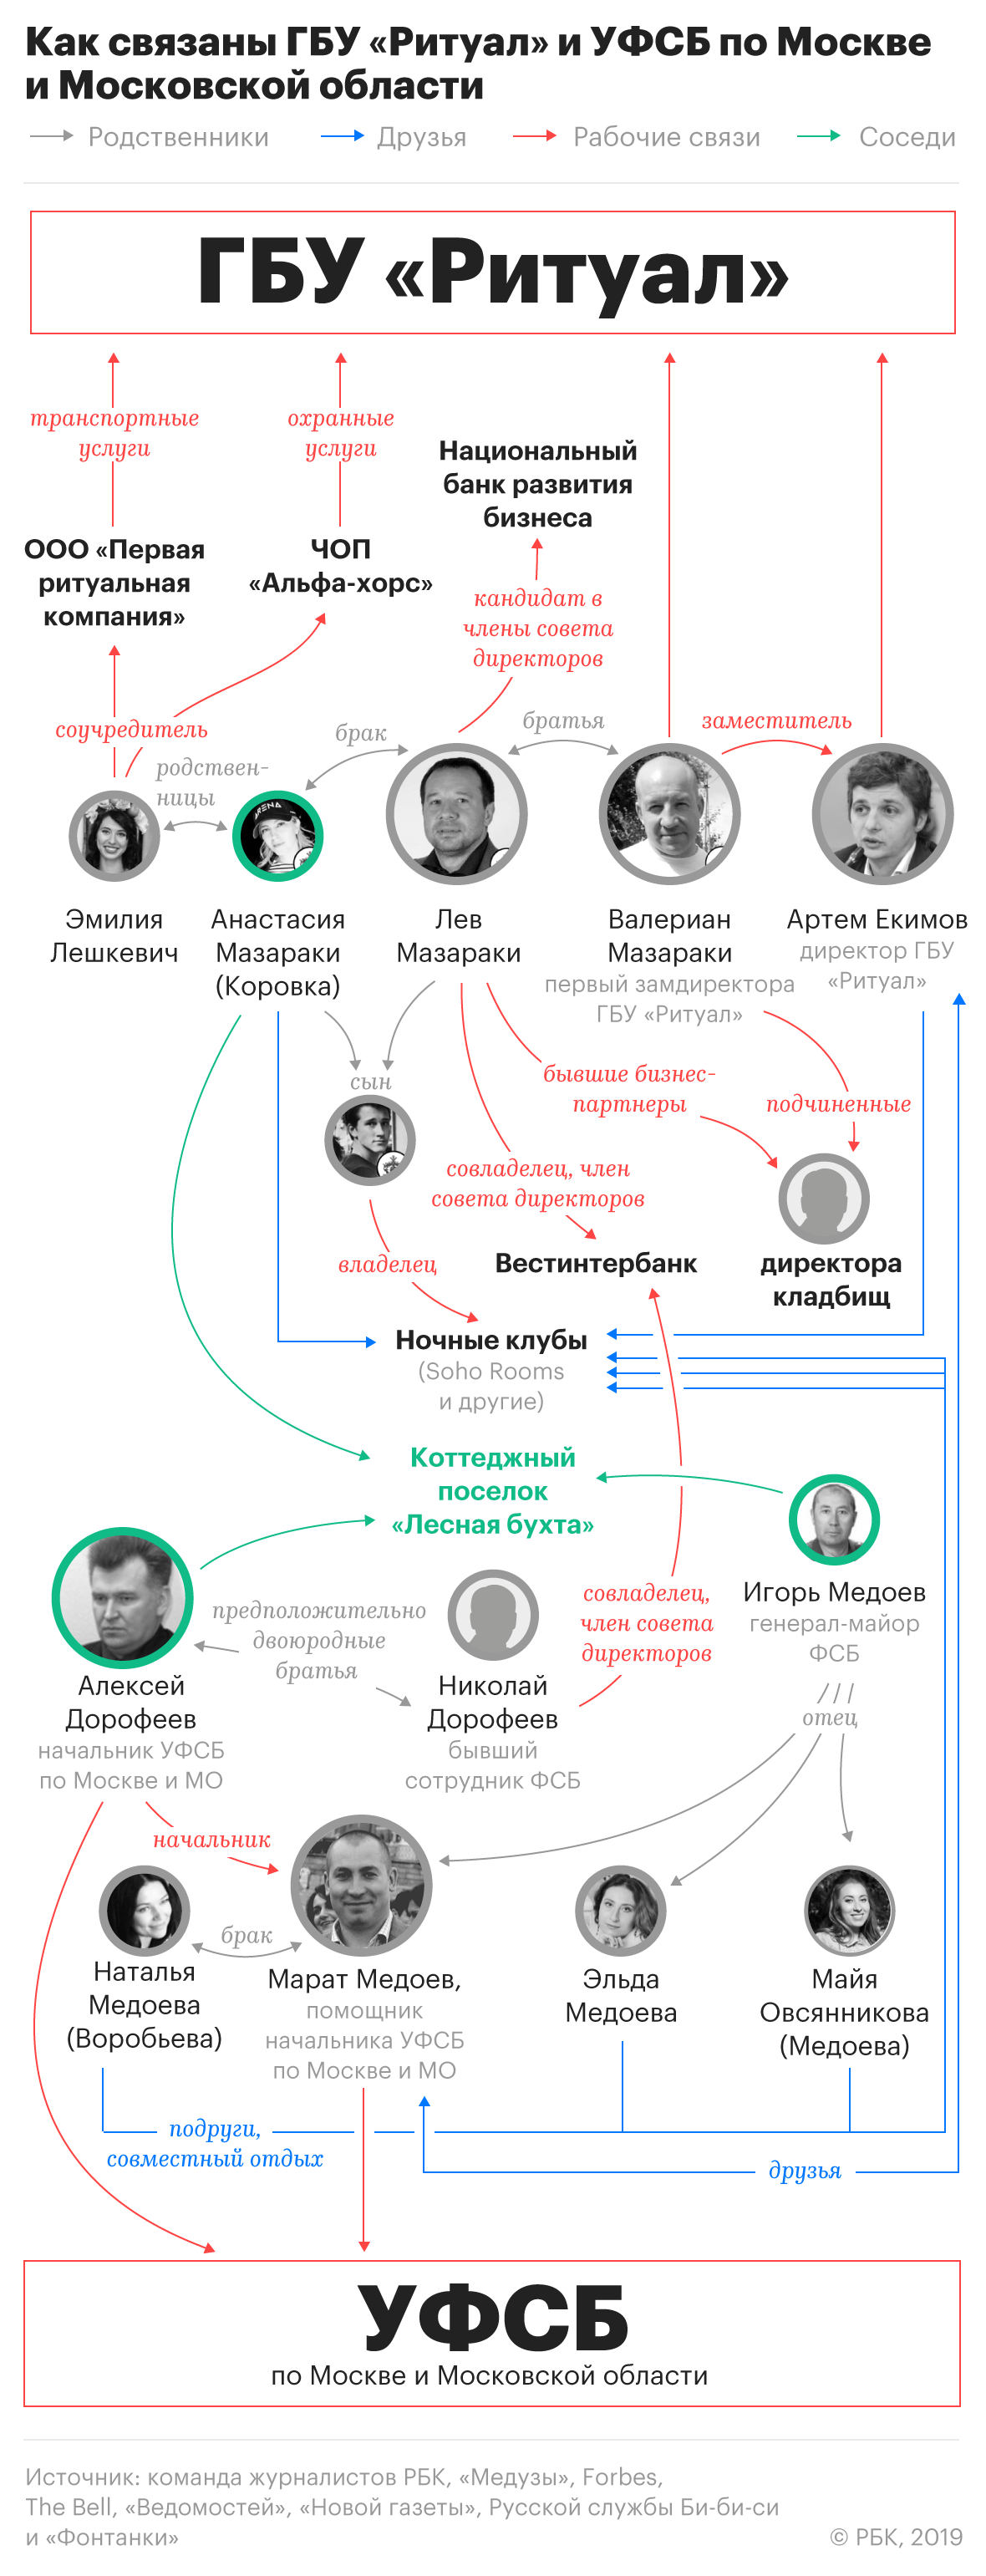 Расследование Голунова о похоронном бизнесе и московском УФСБ. Главное